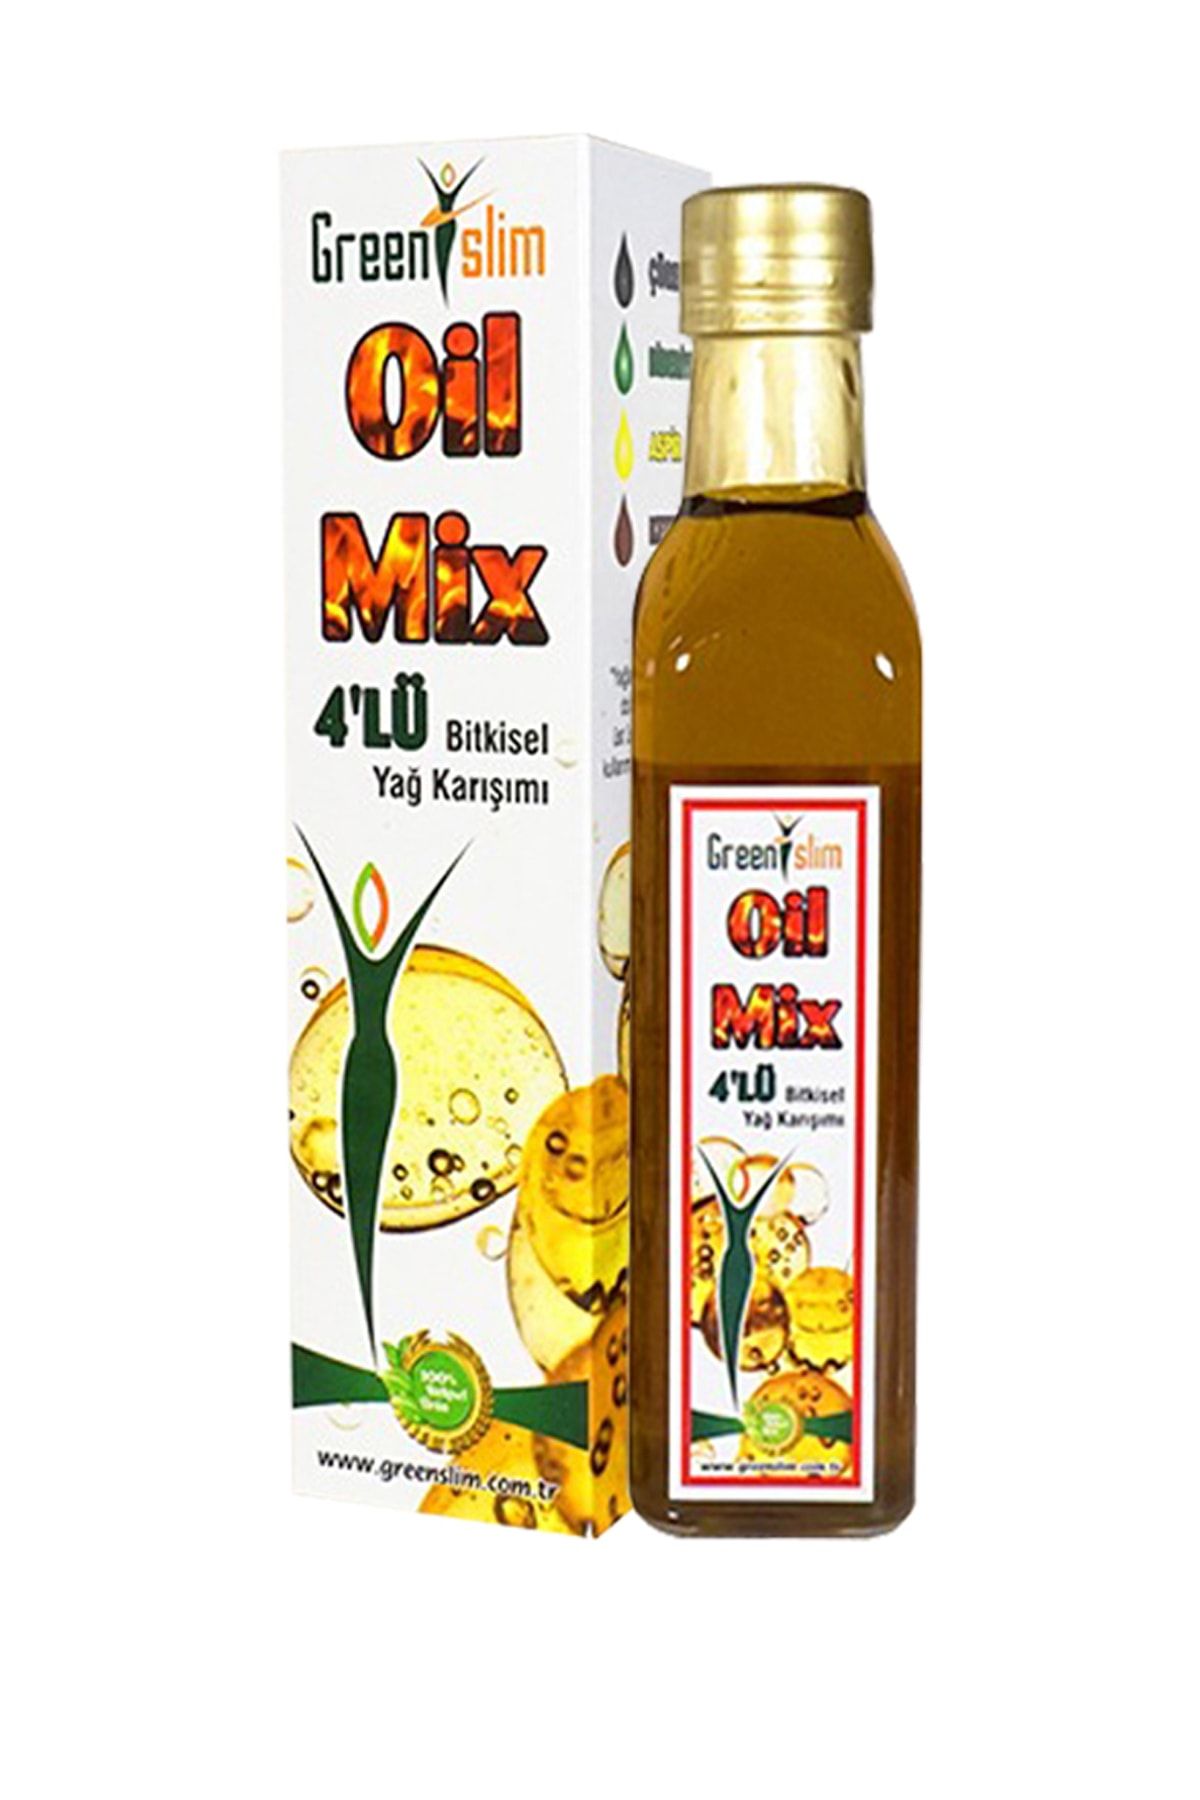 GREEN SLİM Slim Oil Mix 4'lü Bitkisel Yağ Karışımı 250 ml Aspir Biberiye Çörekotu